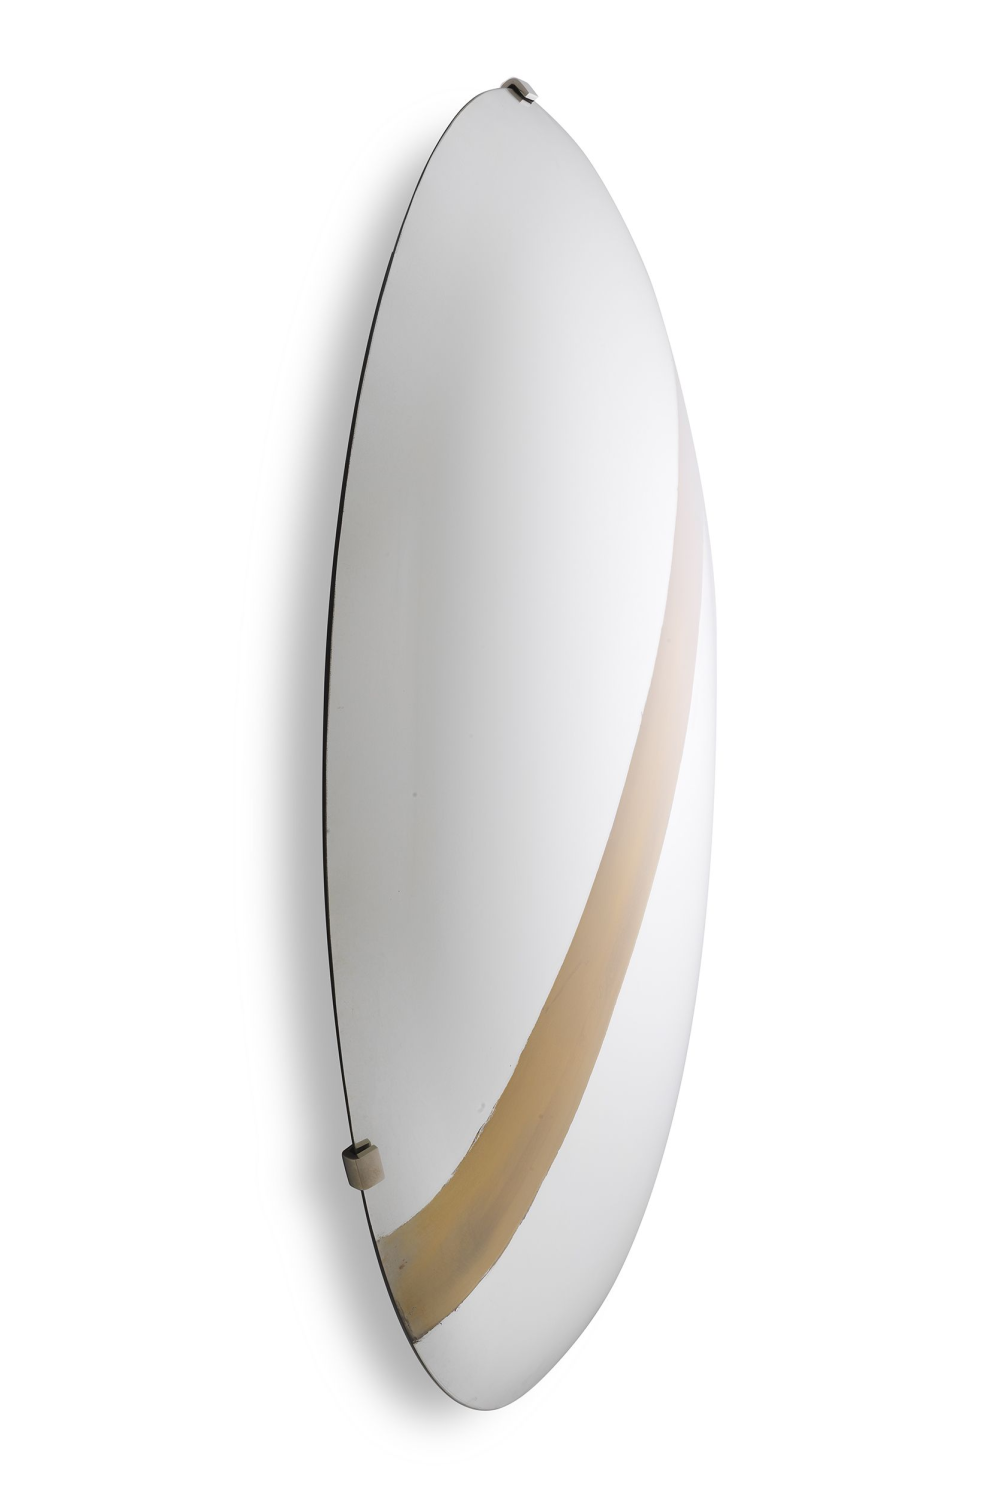 Convex Mirror Wall Plate | Eichholtz Cleveland | OROA